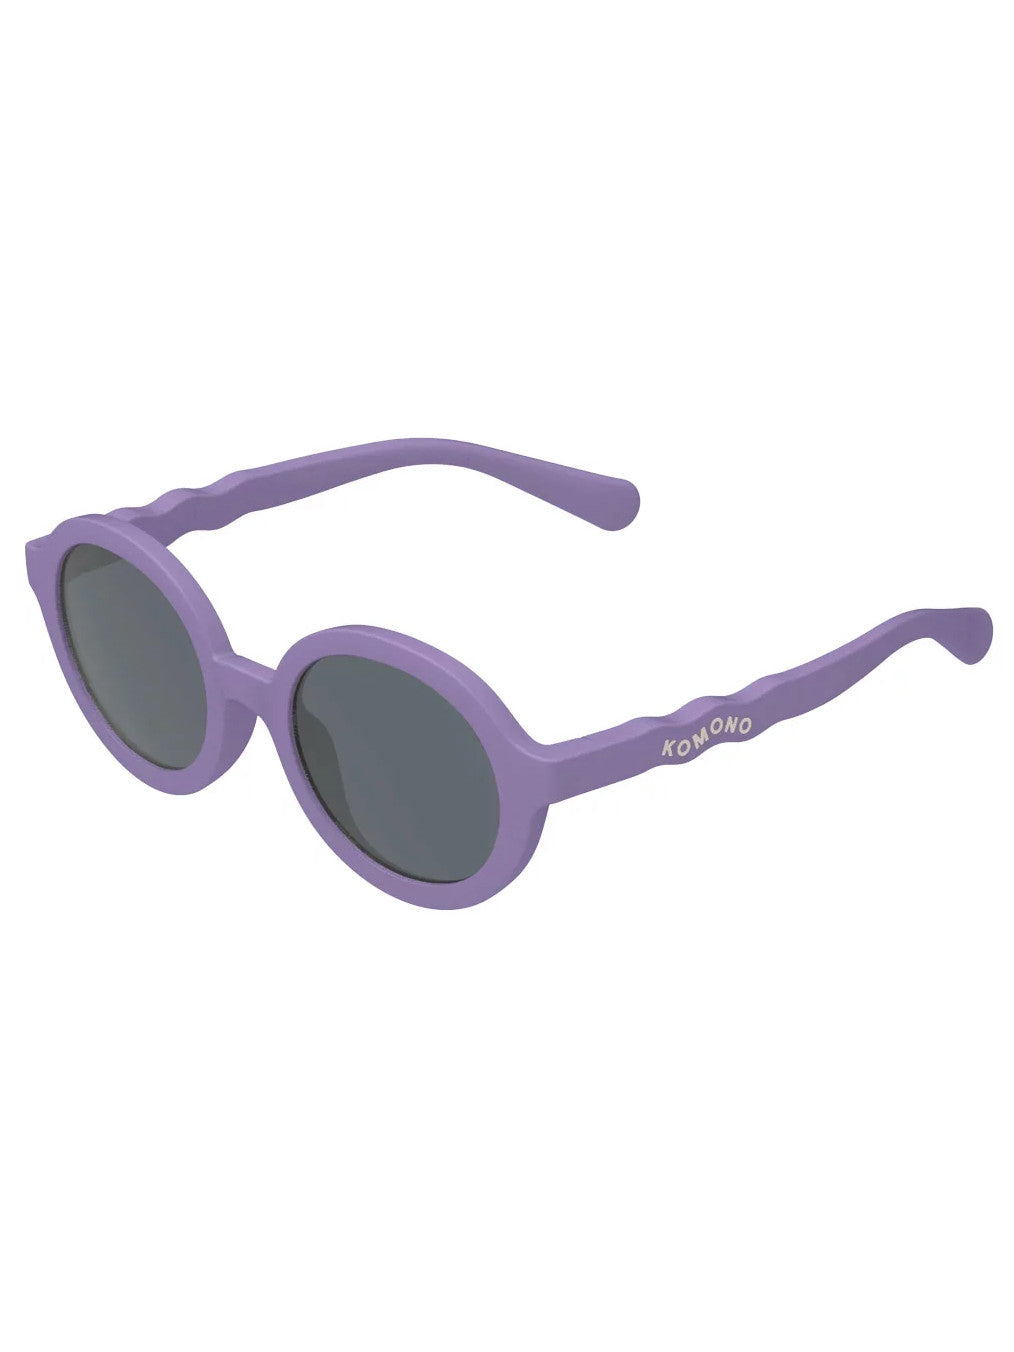 Lou Kiddos Sunglasses  - Lasten aurinkolasit